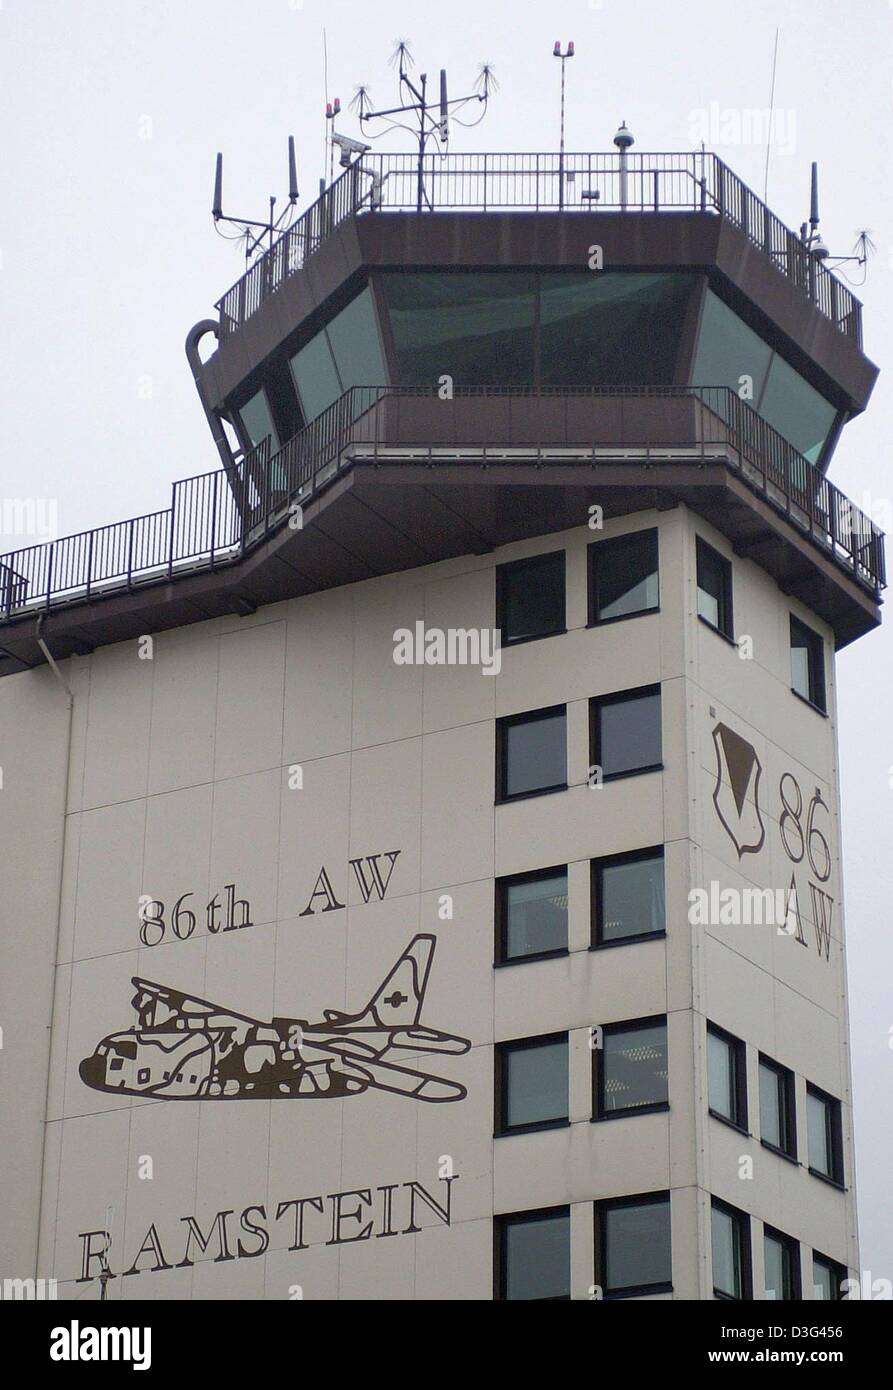 (Afp) - Un hélicoptère de l'armée américaine débarque sur la base aérienne de Ramstein US près de Landstuhl, Allemagne occidentale, 10 février 2003. Ramstein est la plus grande base de l'US air force à l'extérieur des États-Unis. C'est la maison de la 86e escadre de transport aérien (escadron de transport) et le siège social de l'US Air Forces canadiennes en Europe. Selon le journal "Welt am Sonntag" le ministère de la défense américain a Banque D'Images